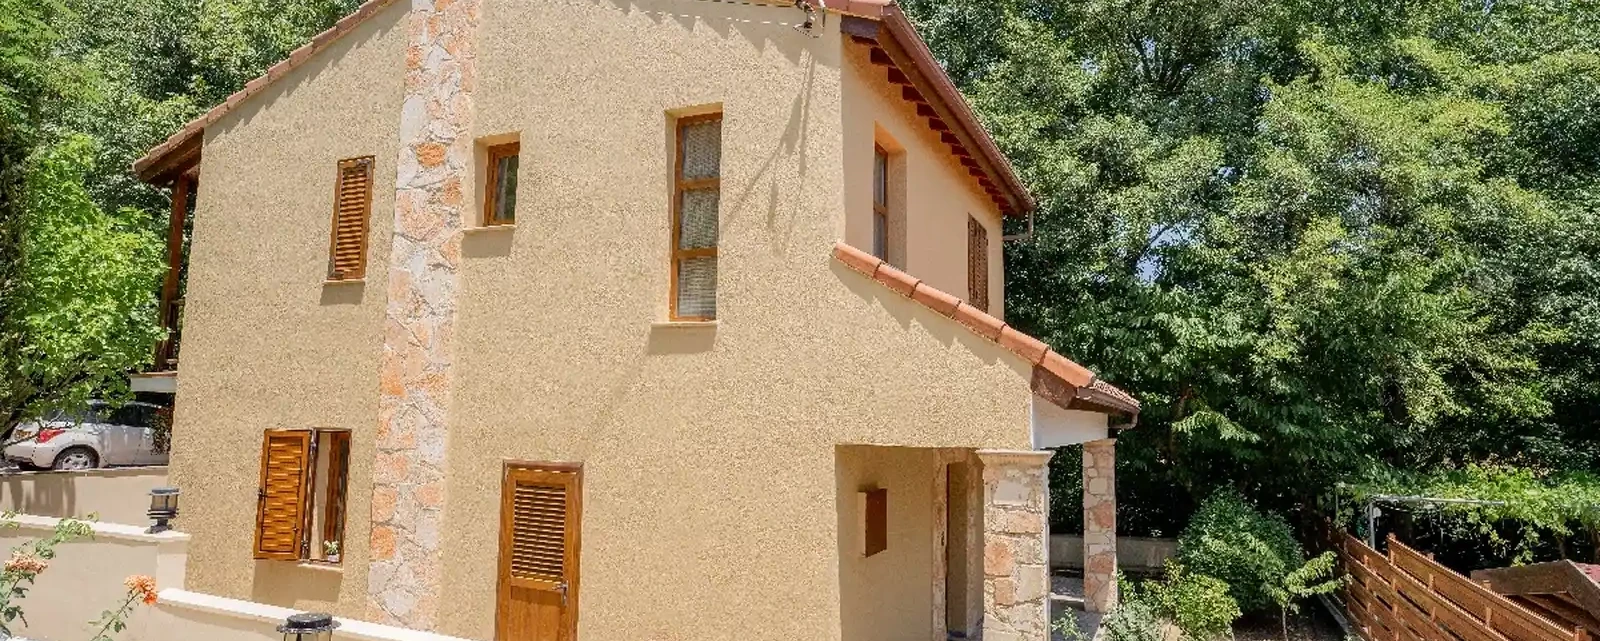 3-bedroom villa to rent €1.600, image 1